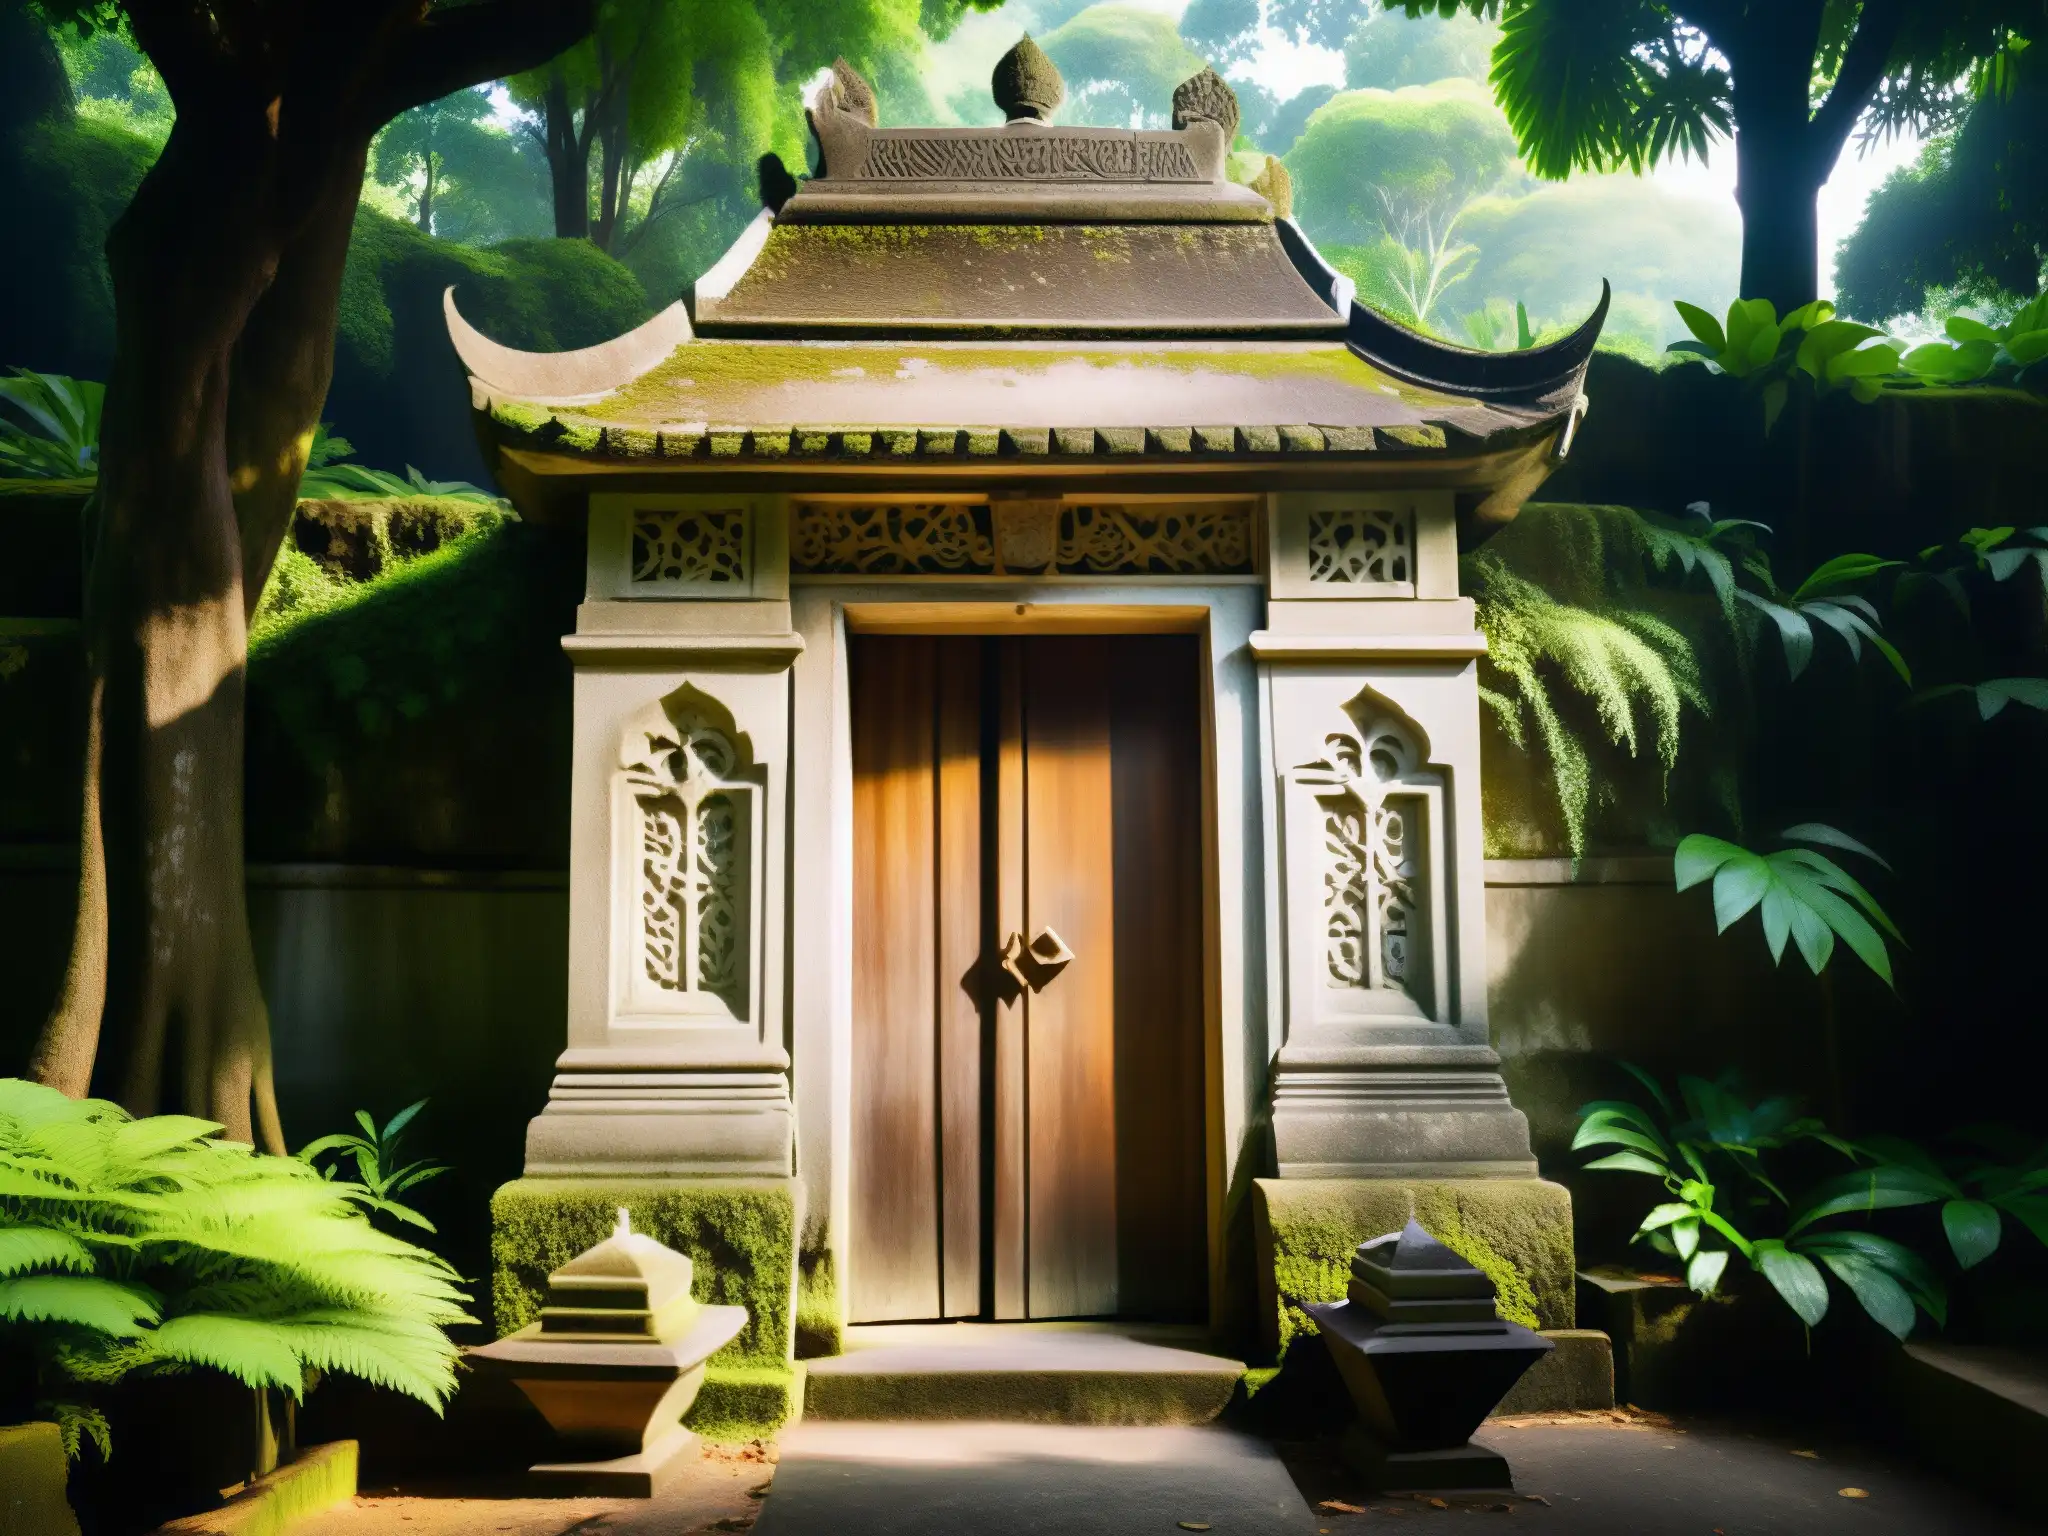 Antigua cripta cubierta de musgo en un cementerio de Malasia, revelando secretos y leyendas entre los árboles altos